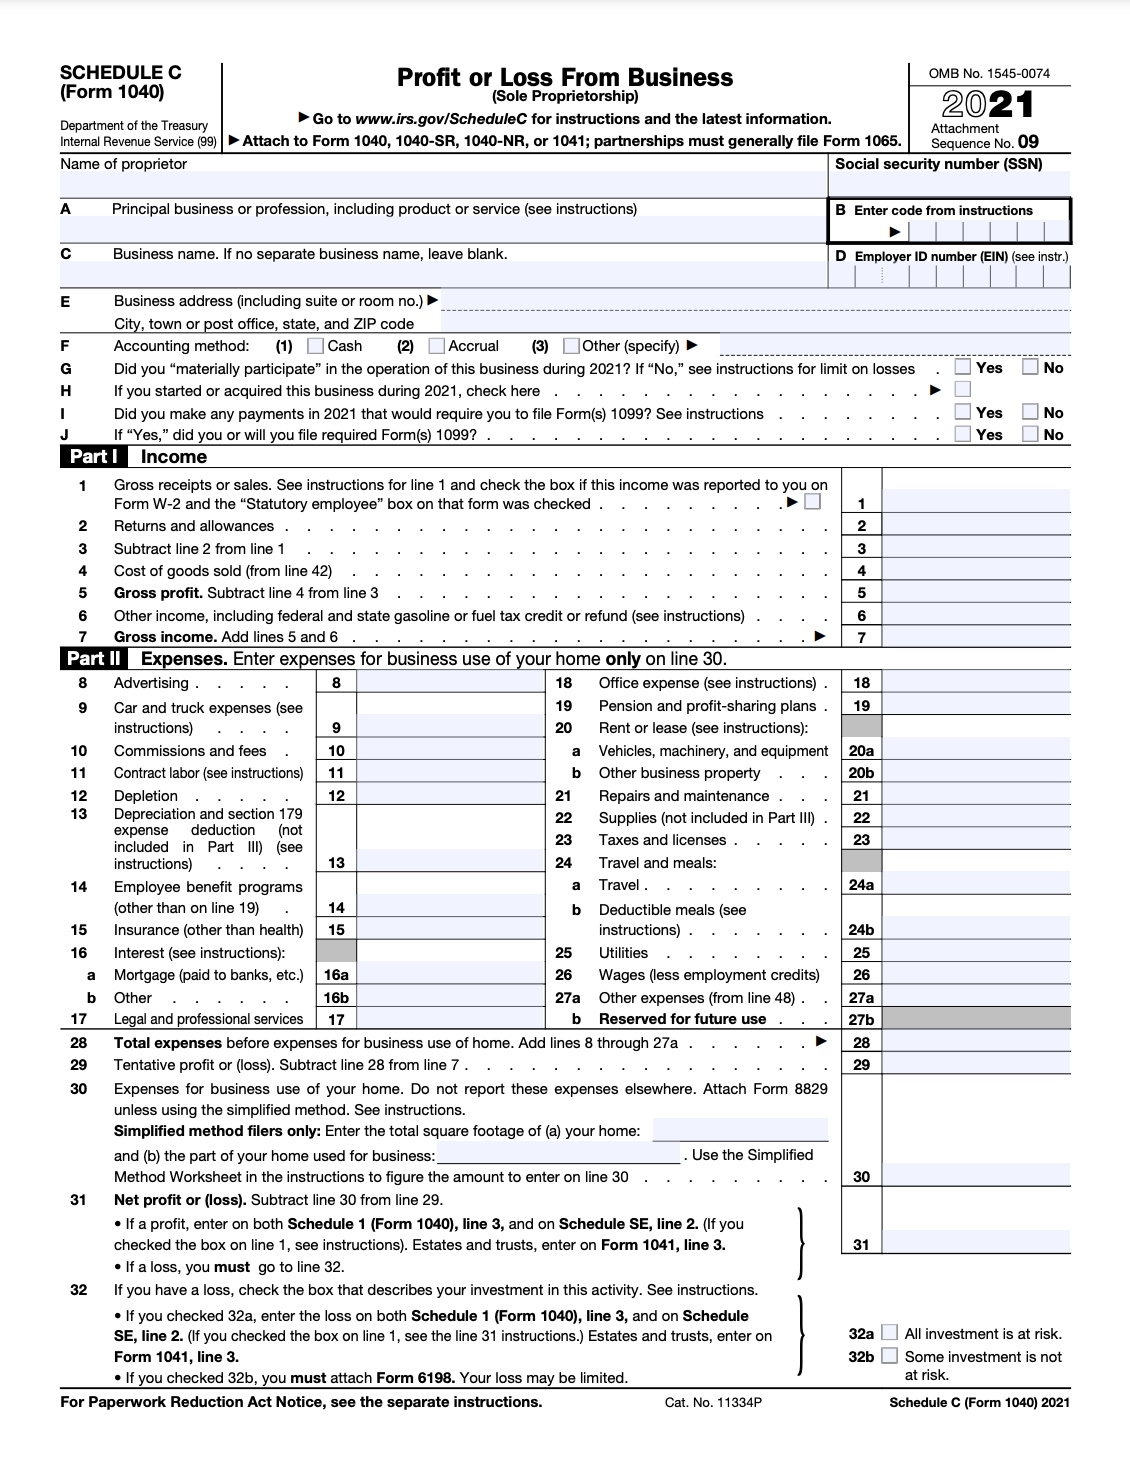 schedule c tax form